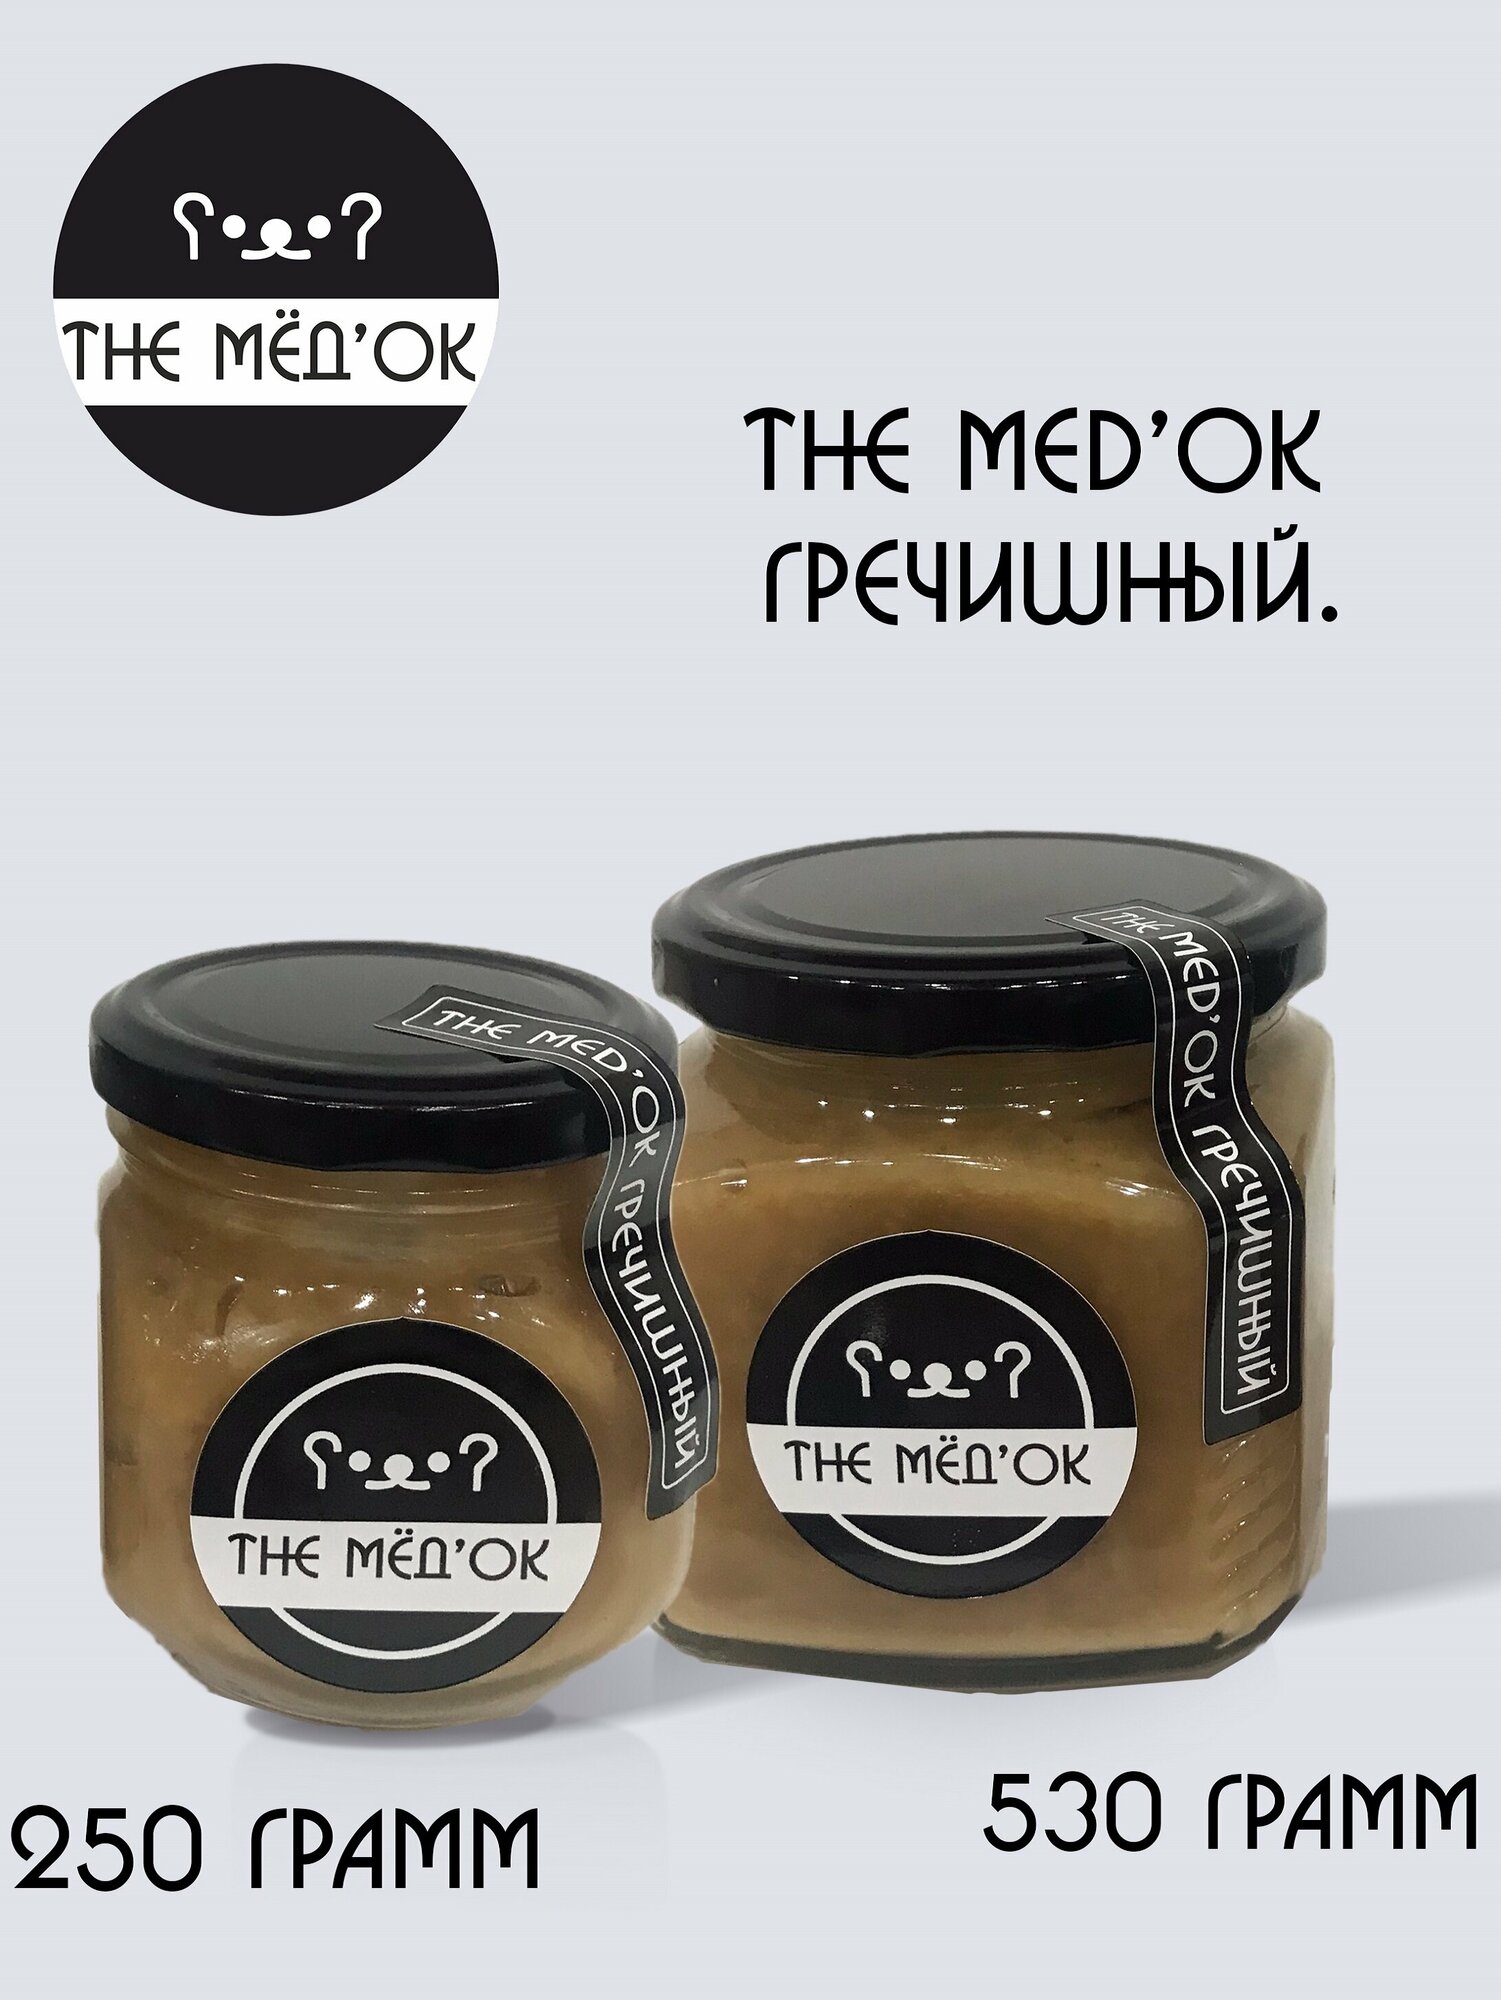 Гречишный Мёд натуральный THE MED'OK гречишный 530 грамм - фотография № 4